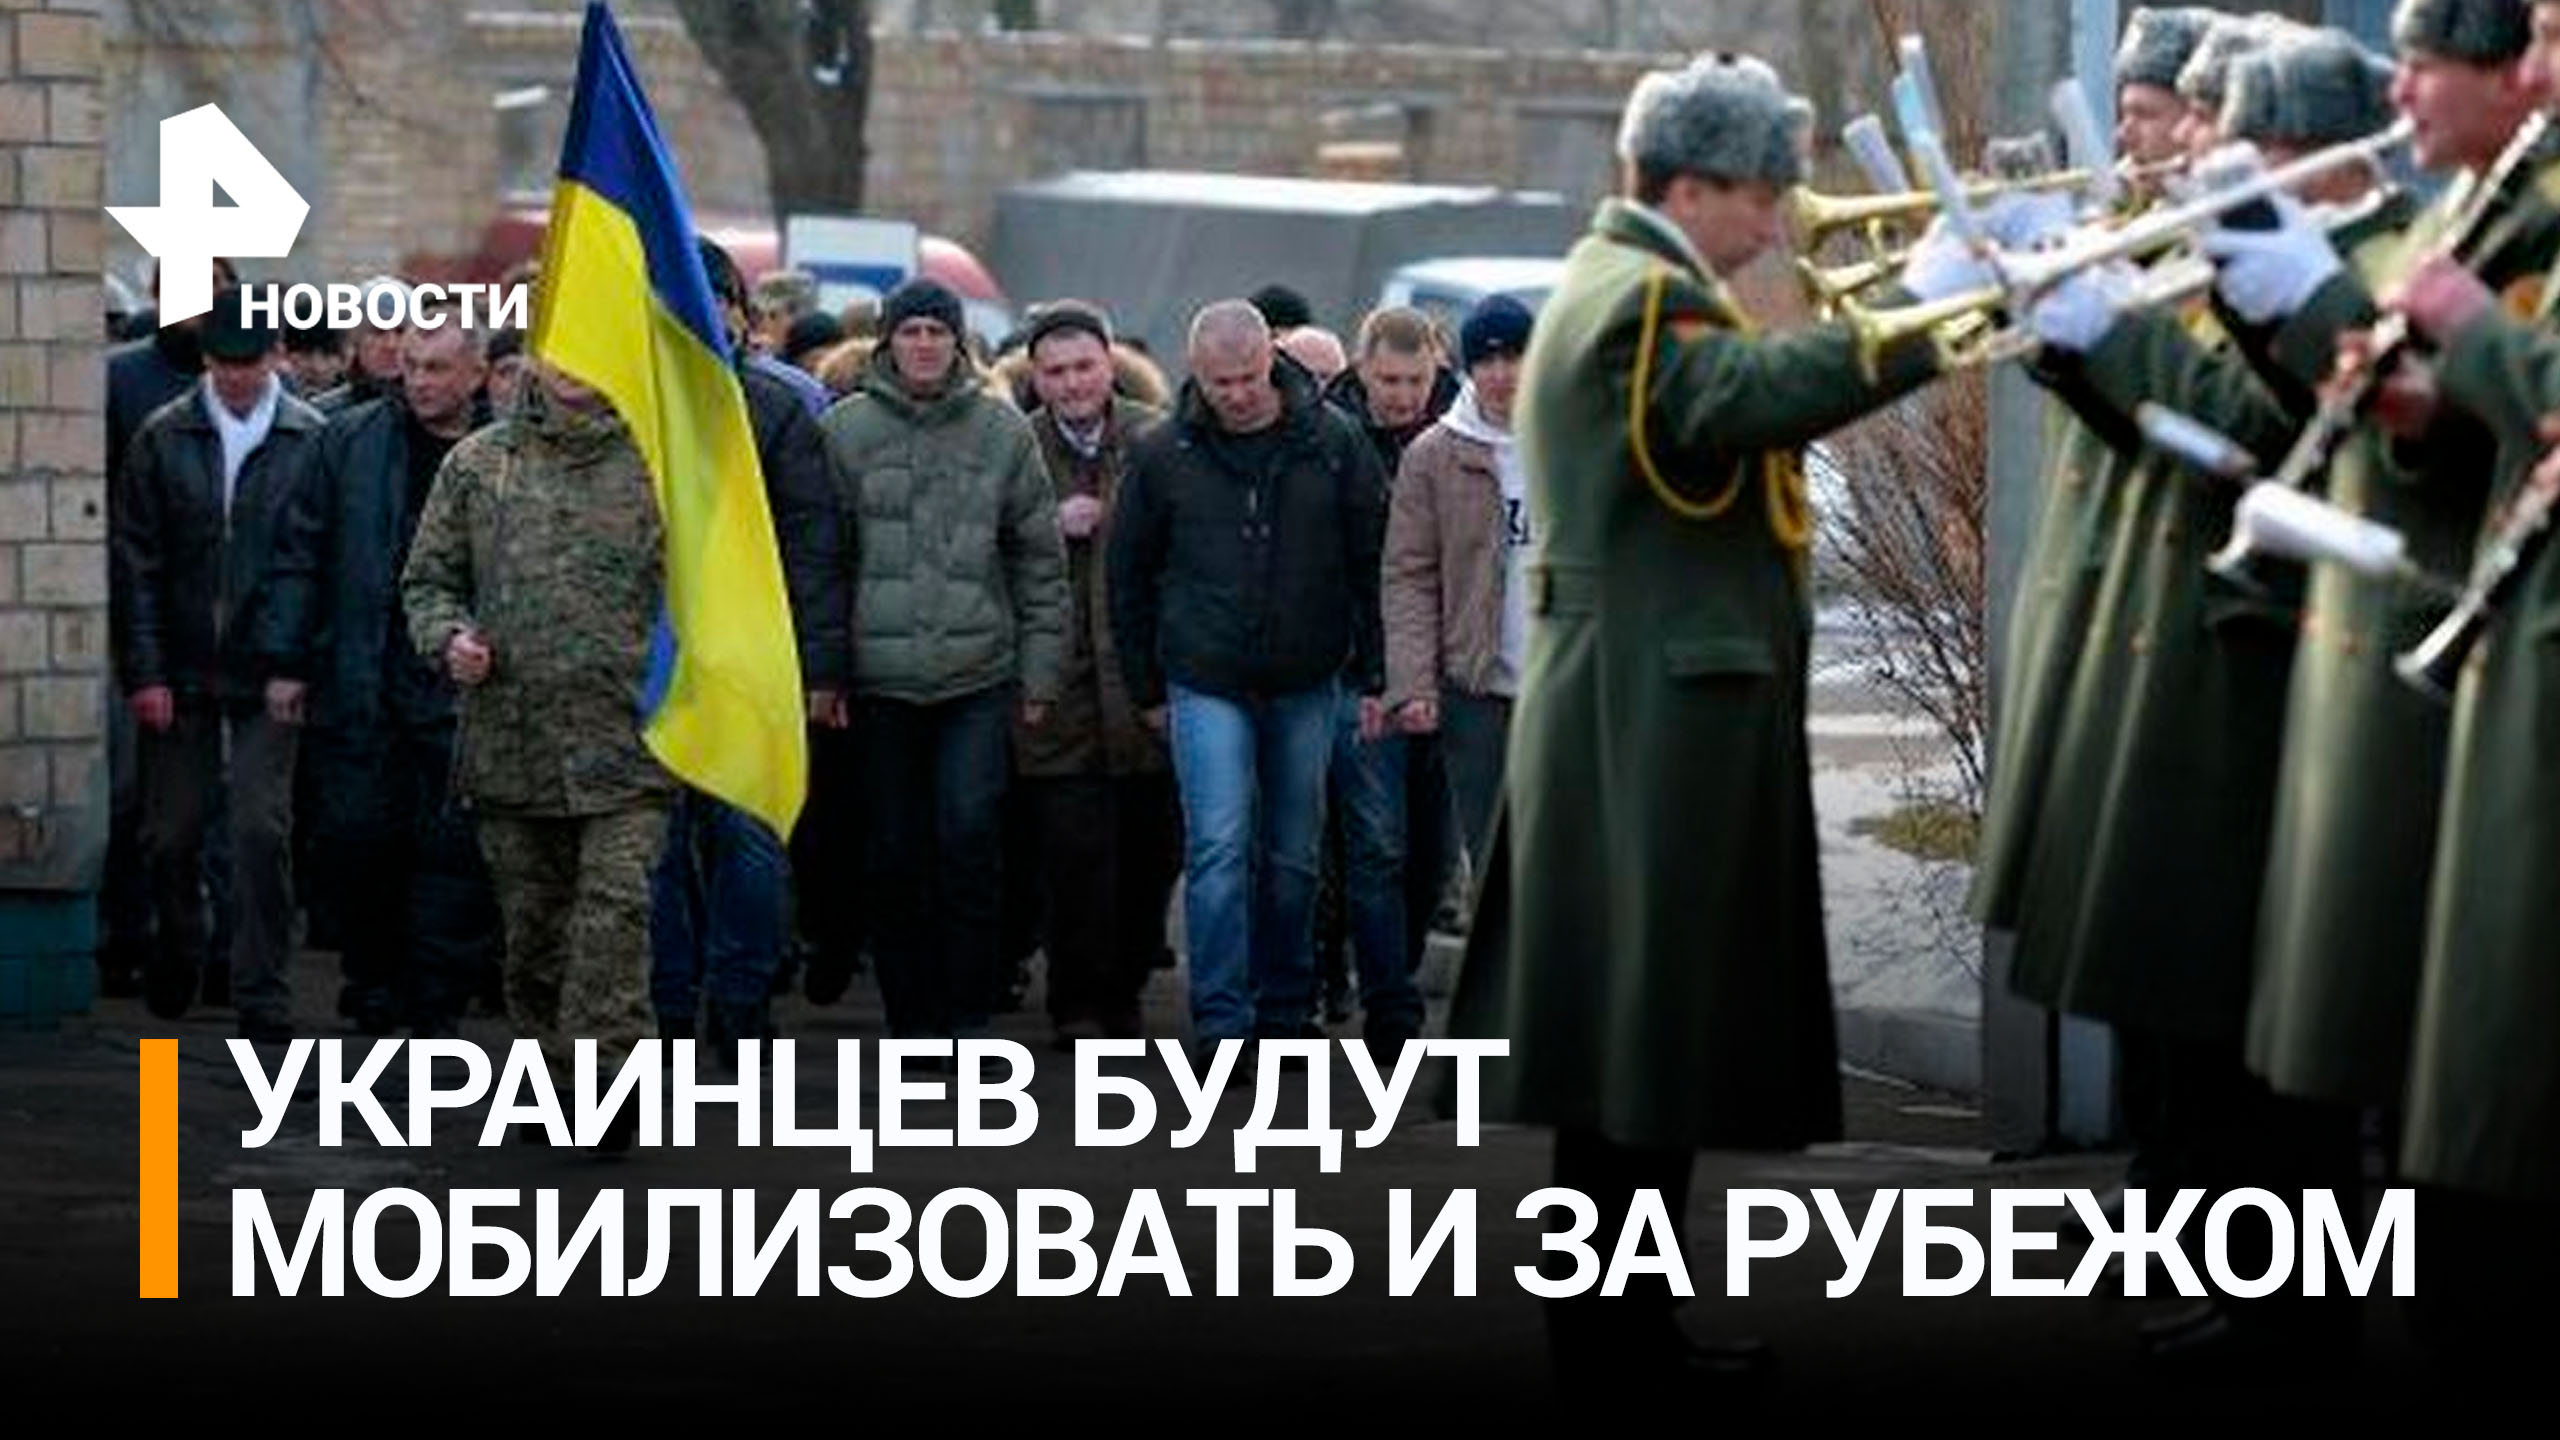 Власти Украины готовят законопроект о мобилизации граждан за рубежом / РЕН Новости